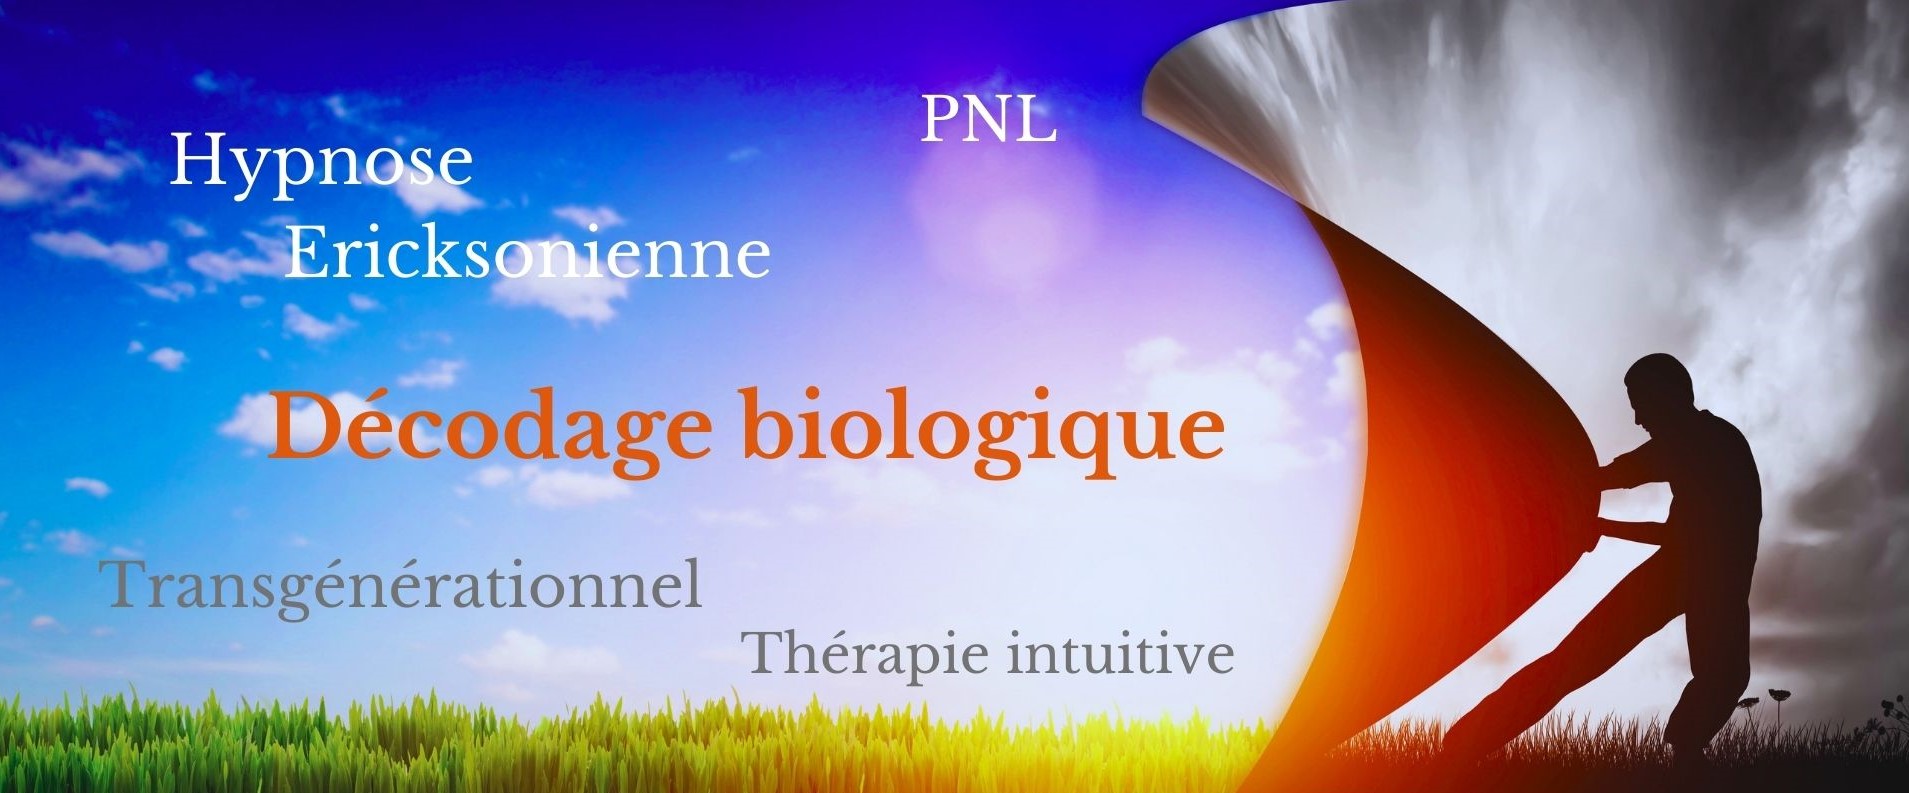 Décodage biologique, hypnose, PNL, Transgénérationnel, Thérapie intuitive